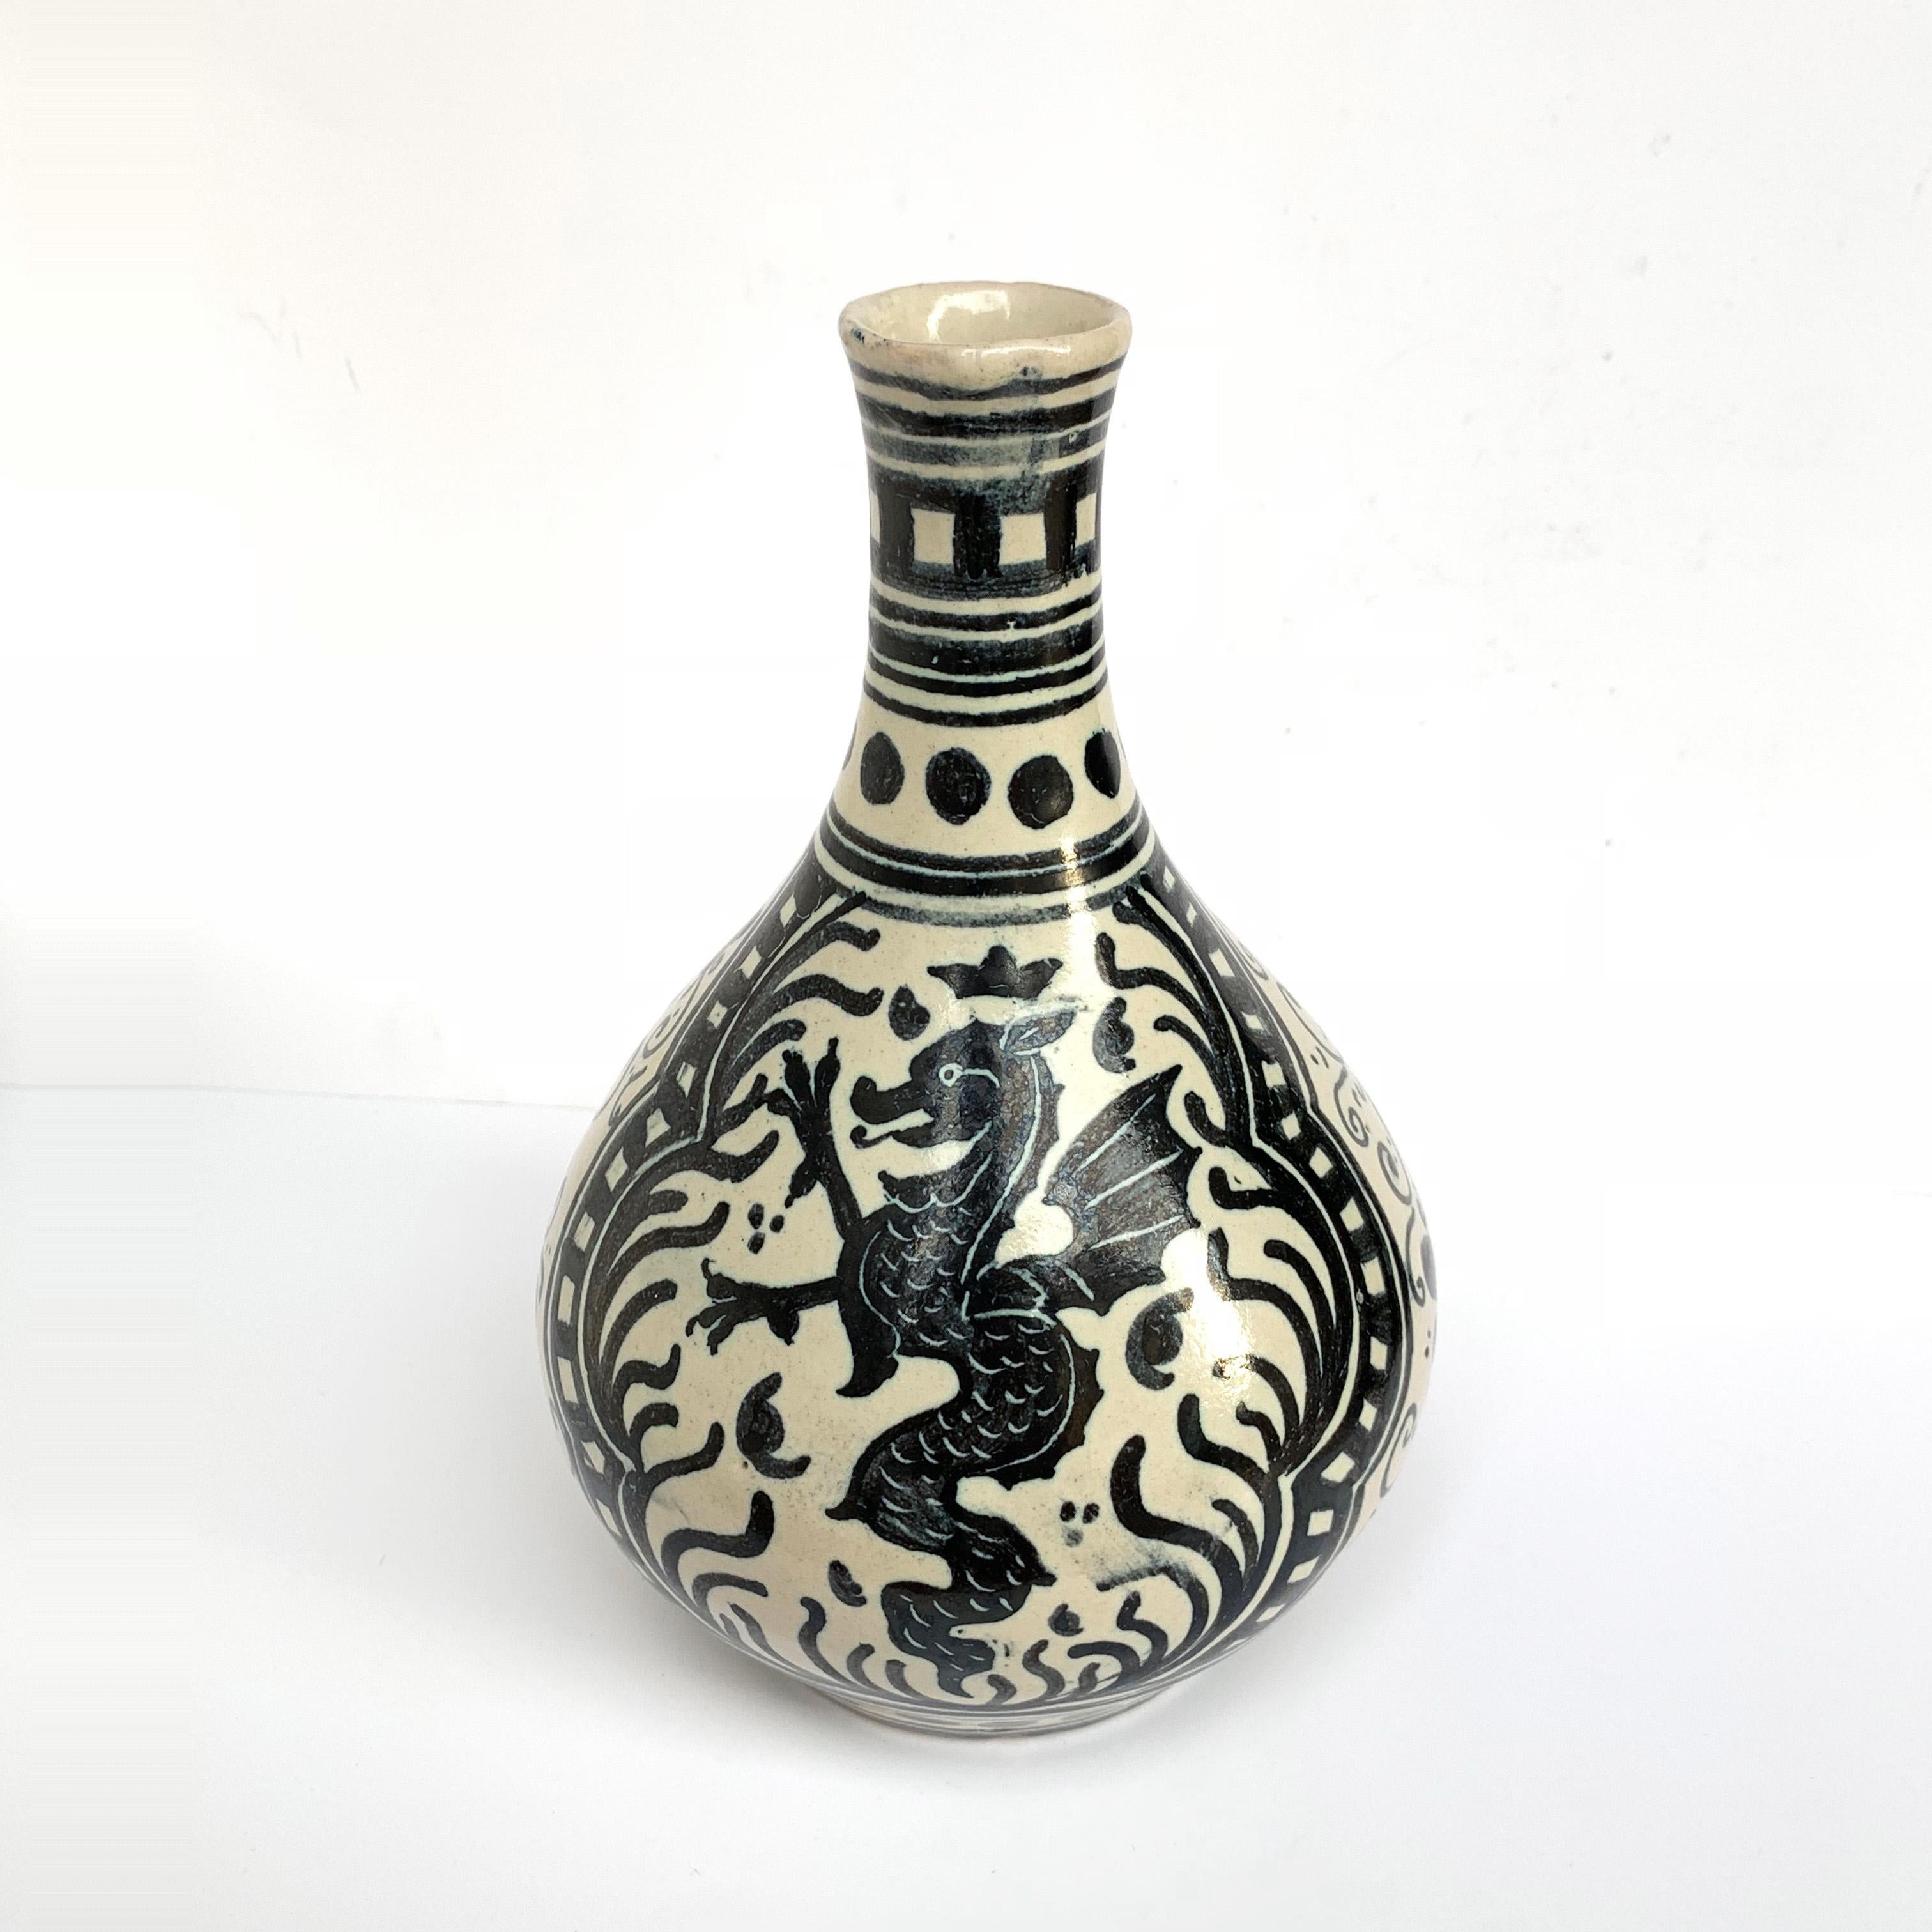 Bellissimo vaso in stile RAFFAELLO , raffigurante un Drago
Deruta, Italy, 1960s.